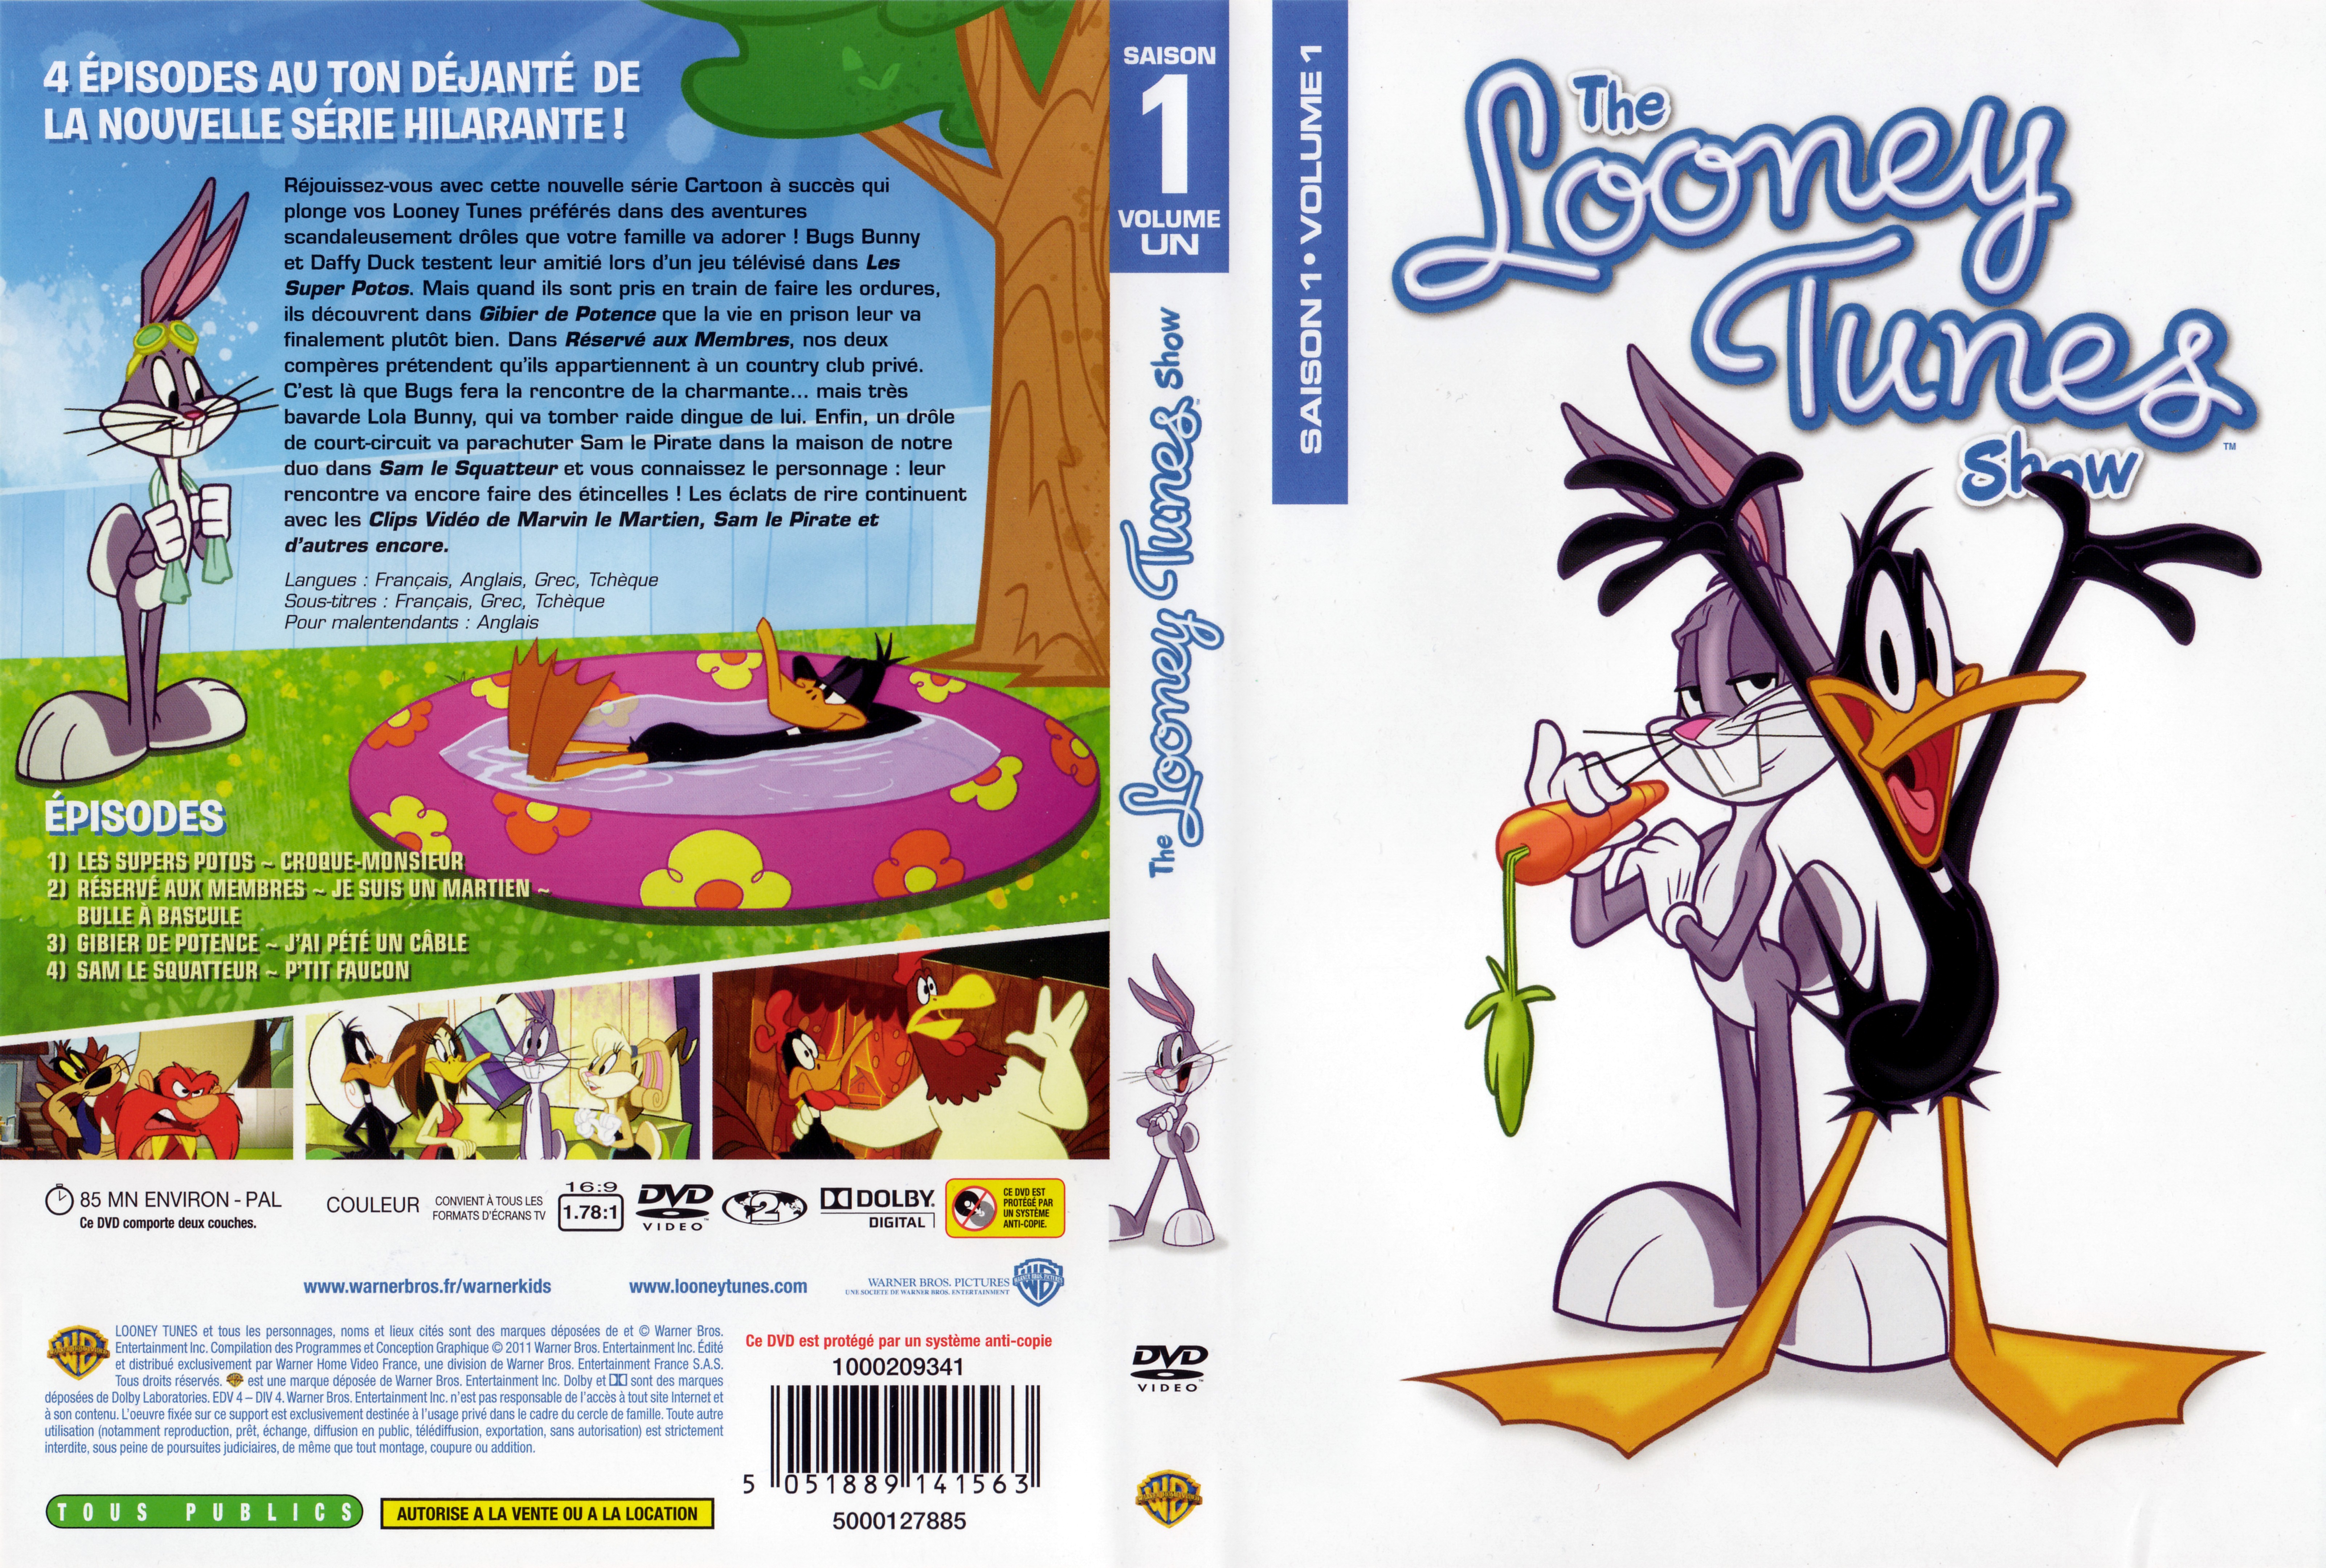 Jaquette DVD The Looney Tunes Show Saison 1 vol 1